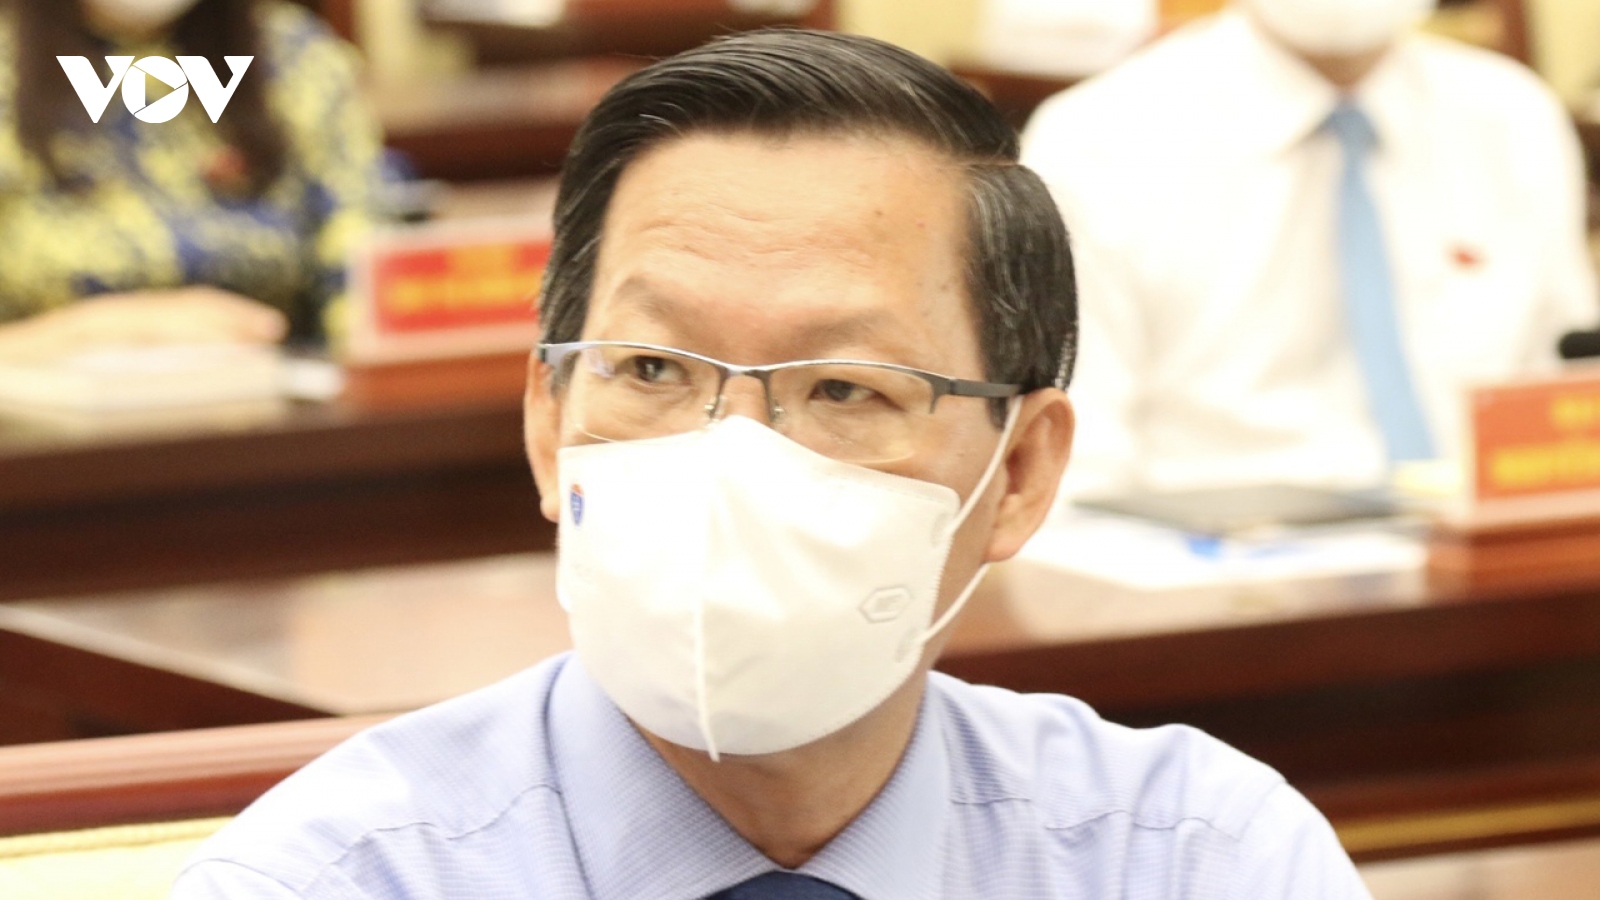 Ông Phan Văn Mãi được bầu làm Chủ tịch UBND TP.HCM nhiệm kỳ 2021 - 2026